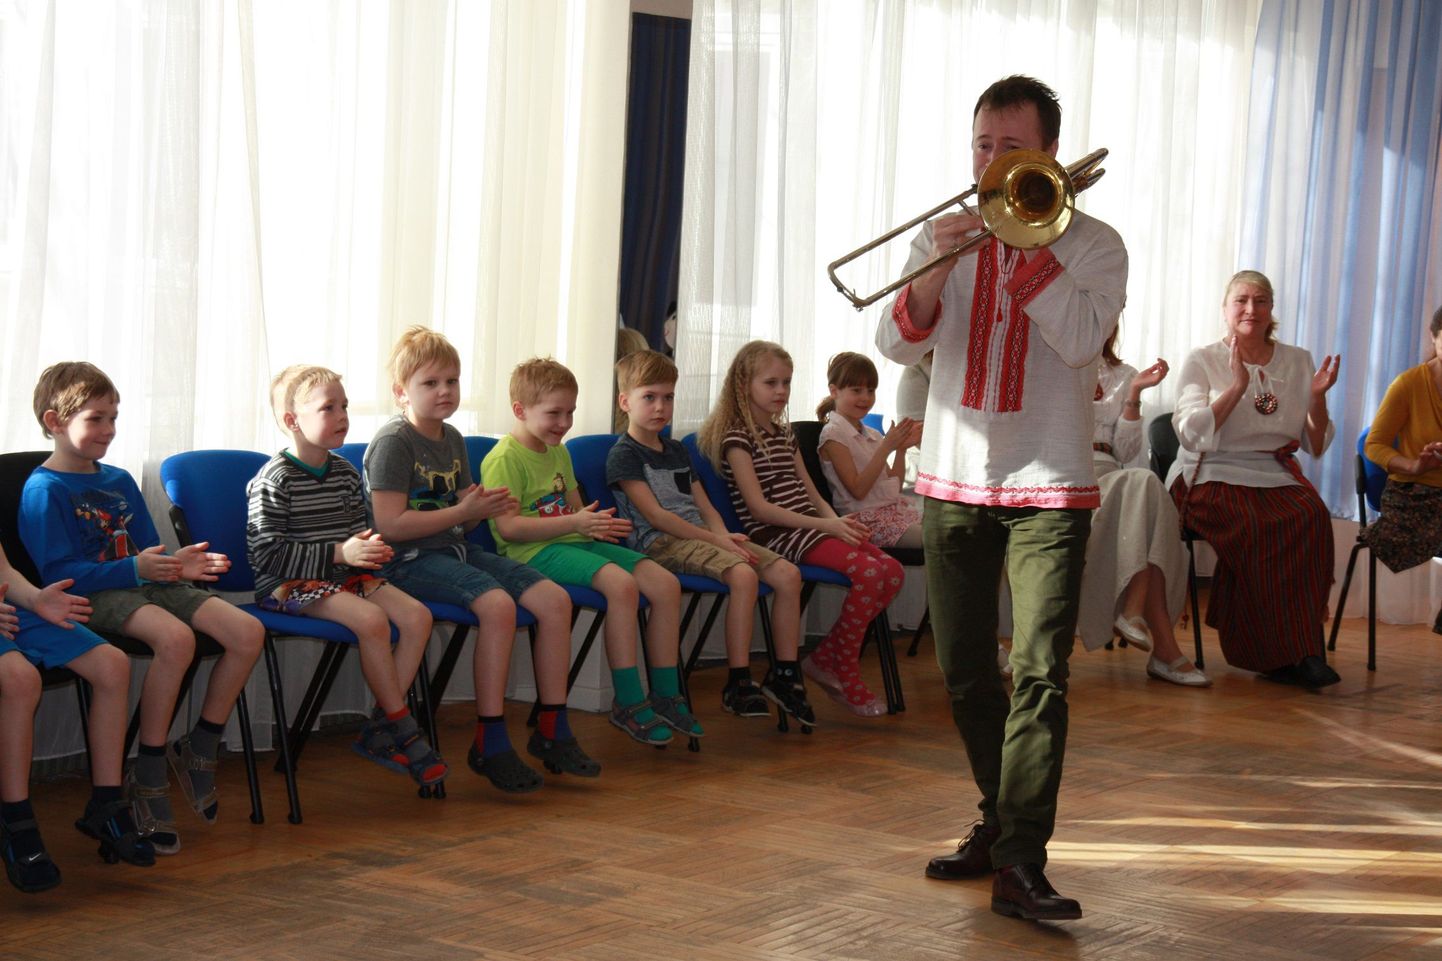 Emakeelepäeva tähistamisel suheldi Männimäe lasteaias nii muusika kui ukraina ja eesti keele kaudu.